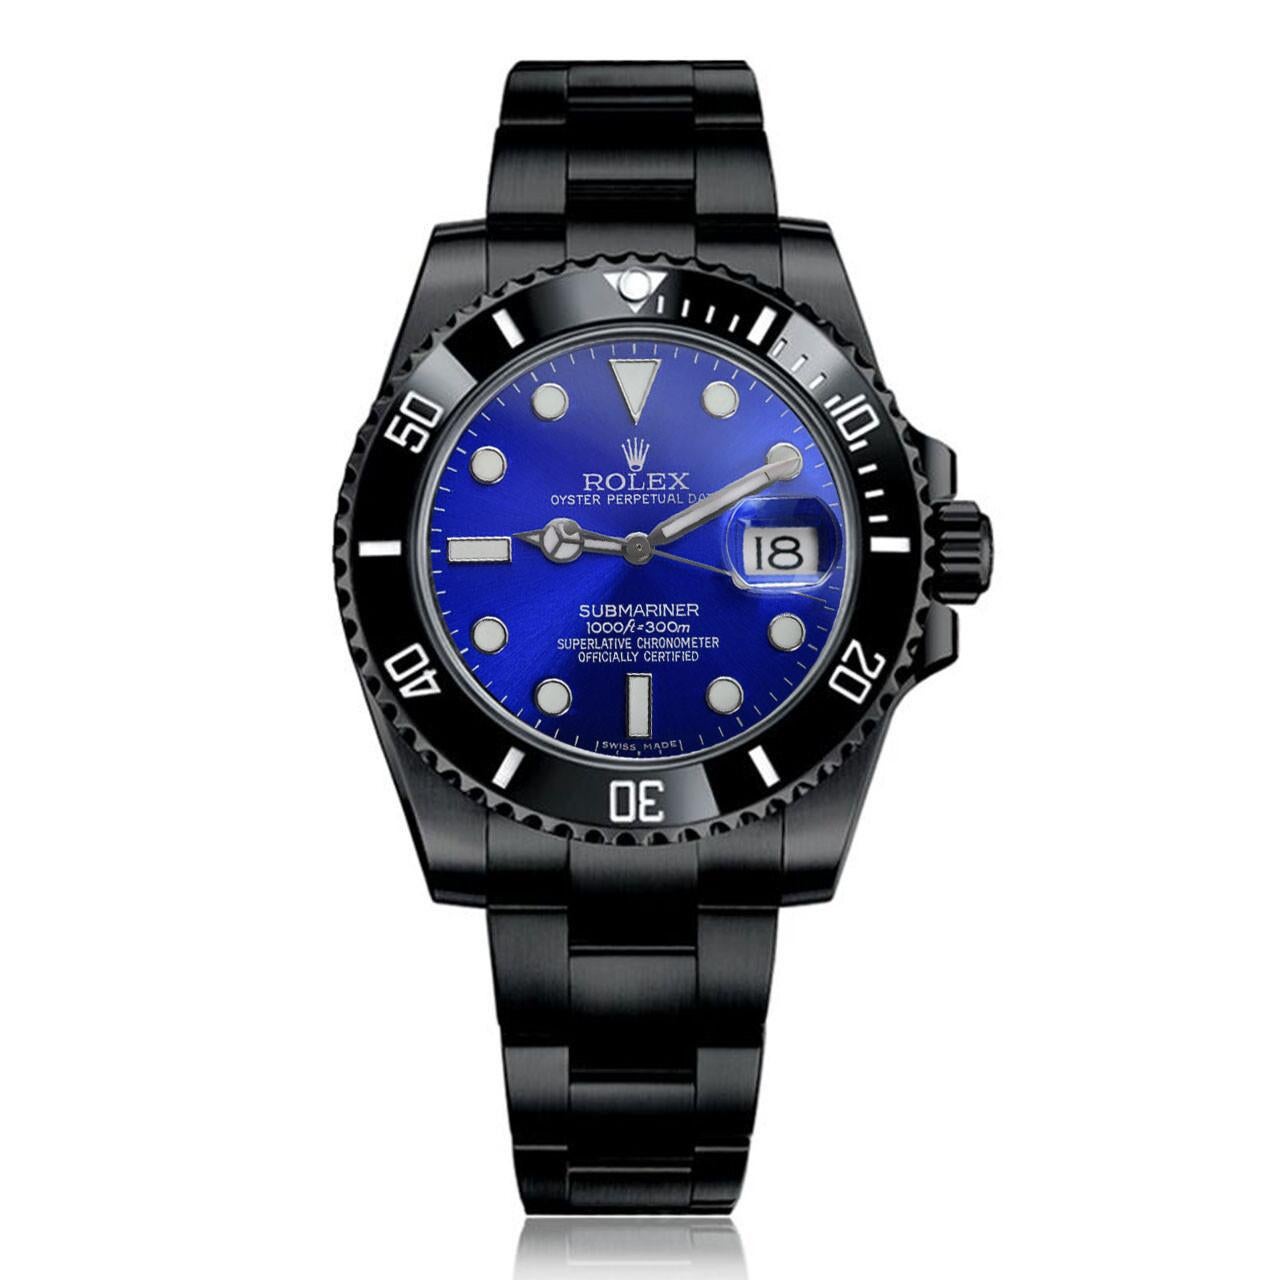 Rolex Submariner Date Cadran bleu Montre en acier inoxydable PVD/DLC noir 116610LN

Veuillez noter que cette montre Rolex n'a jamais été portée et qu'elle a été personnalisée avec un revêtement noir et un cadran bleu. 